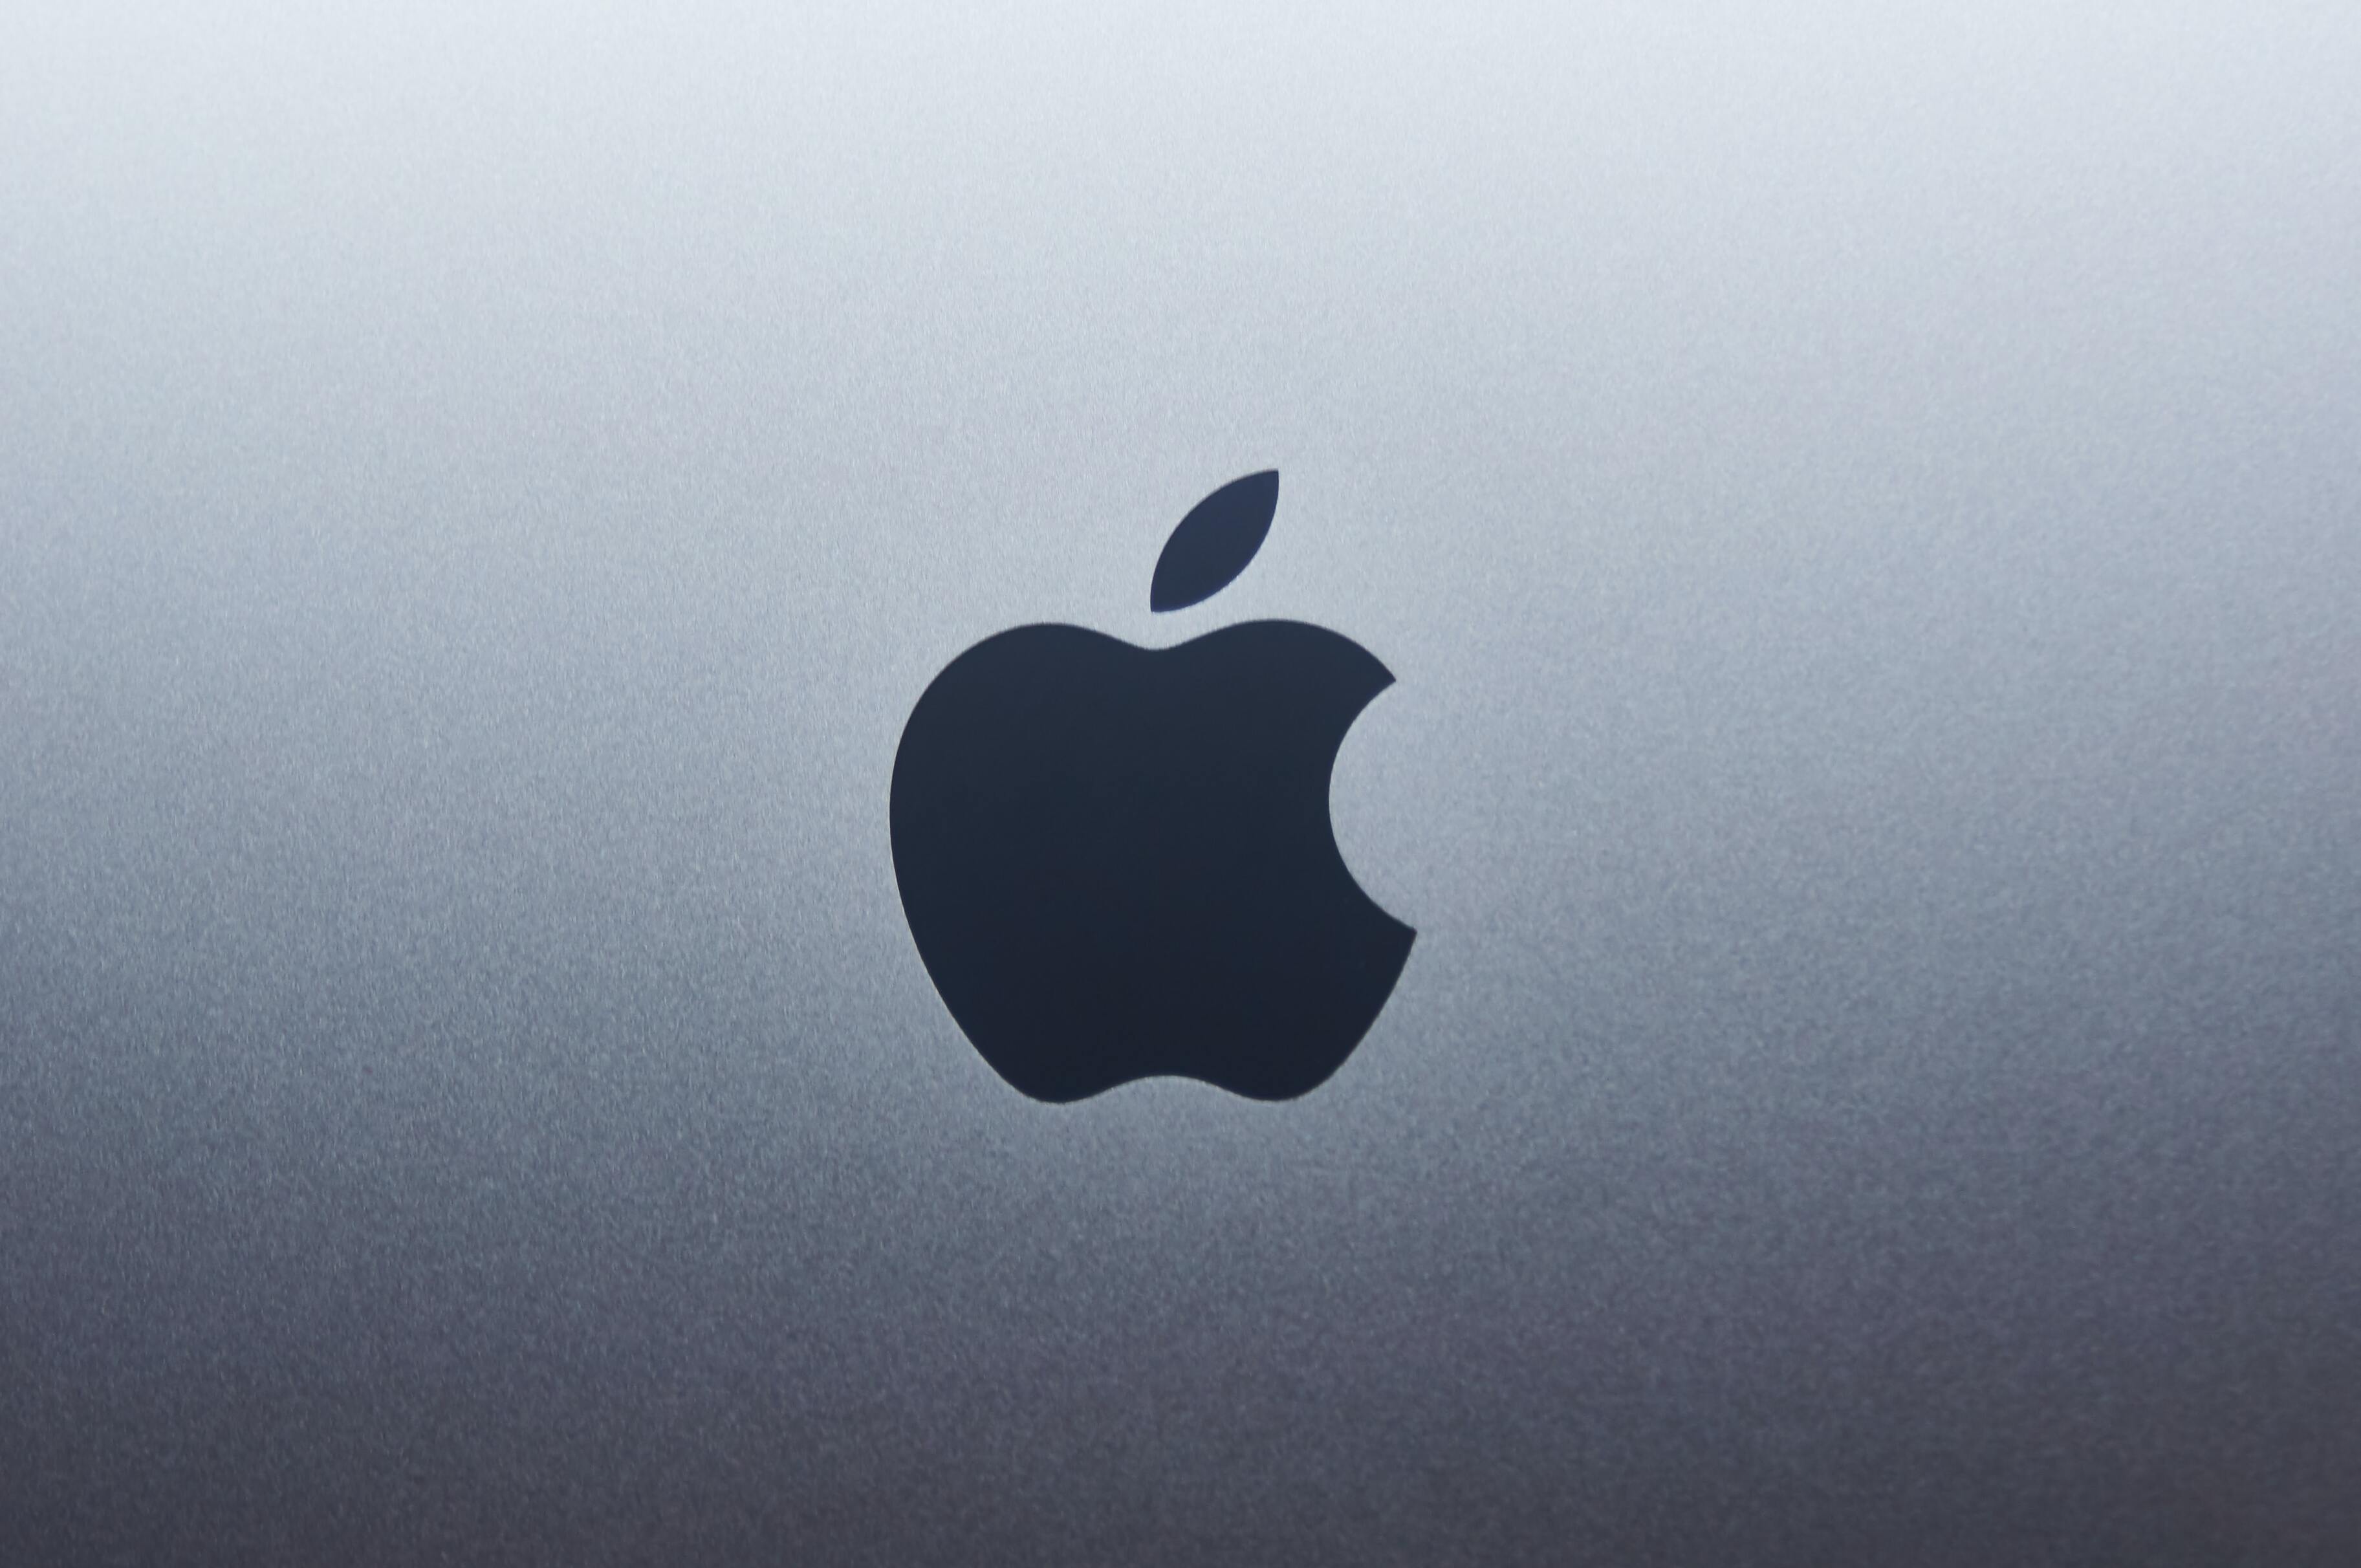 У Apple проблемы: компания сократила расходы через откладывание премий